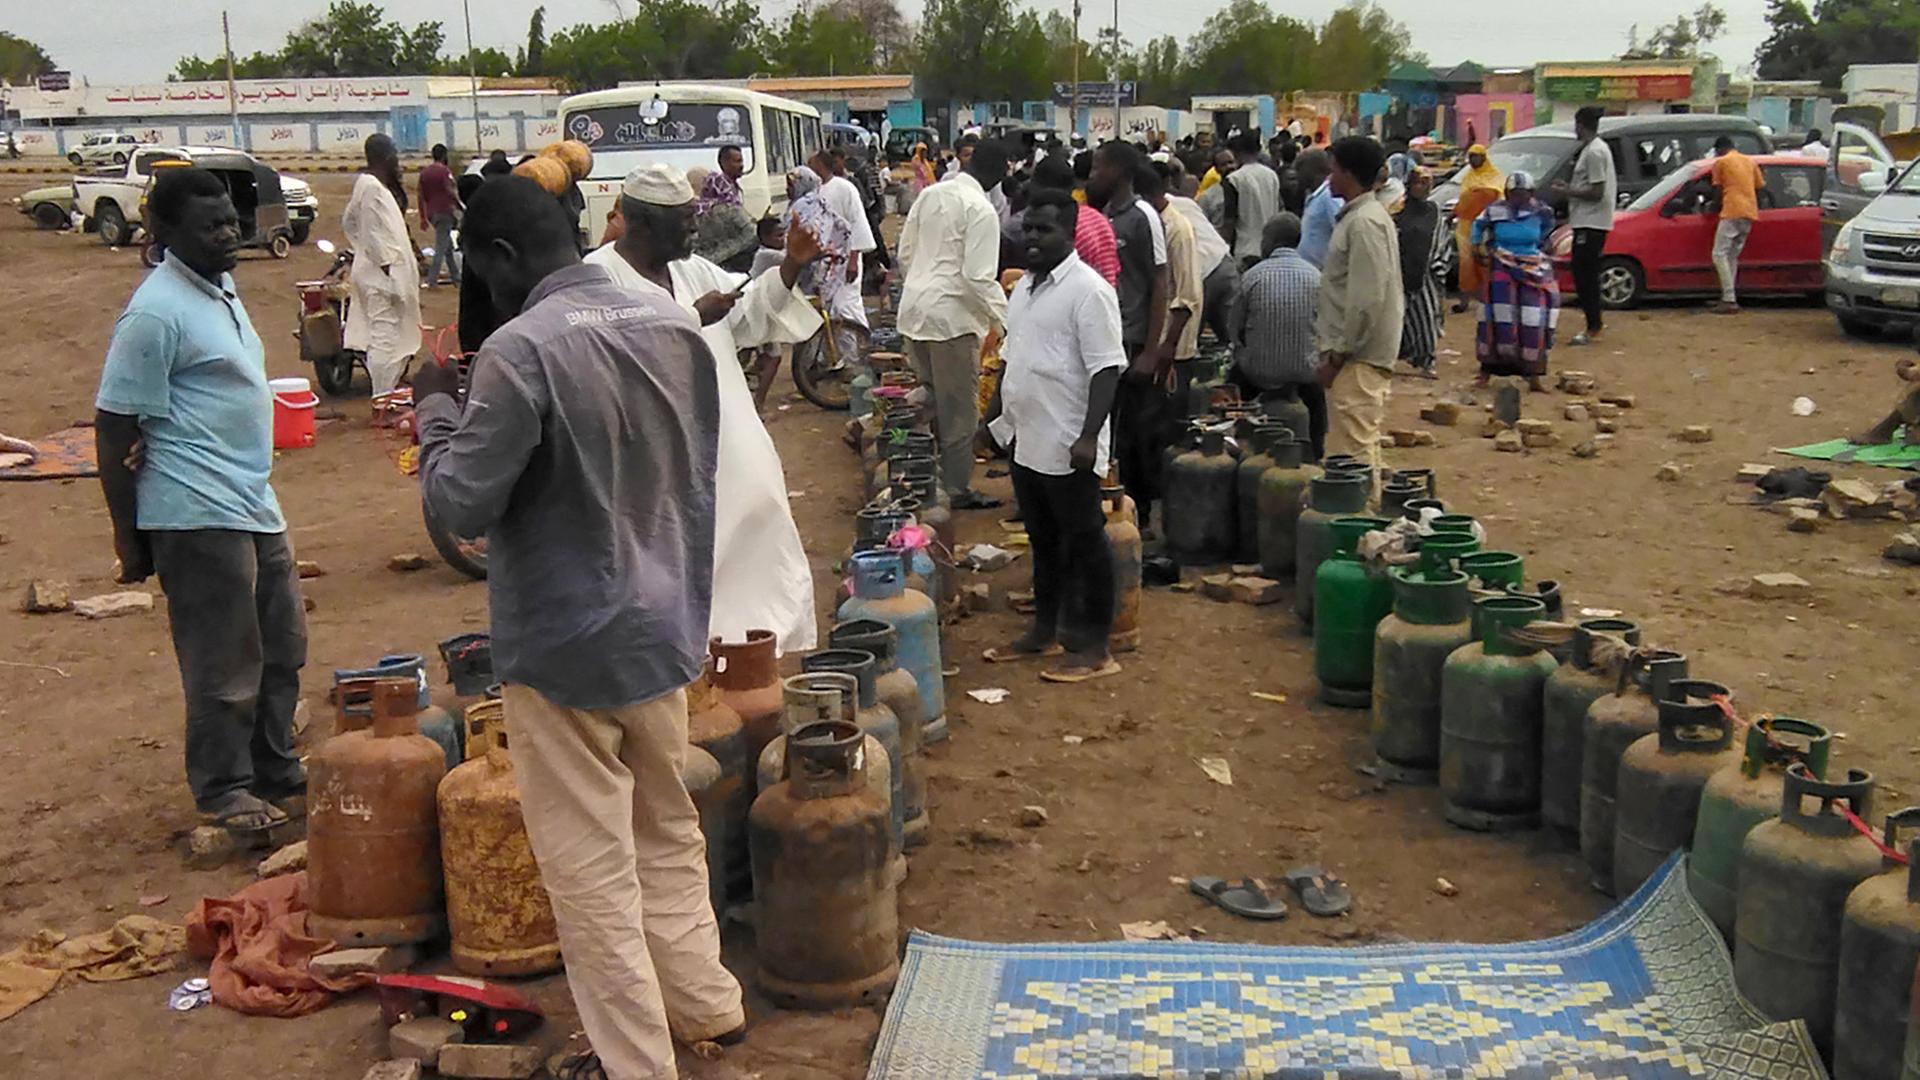 Menschen im Sudan stehen in einer Reihe und warten auf eine Gaslieferung, um ihre Kartuschen wieder befüllen zu können.